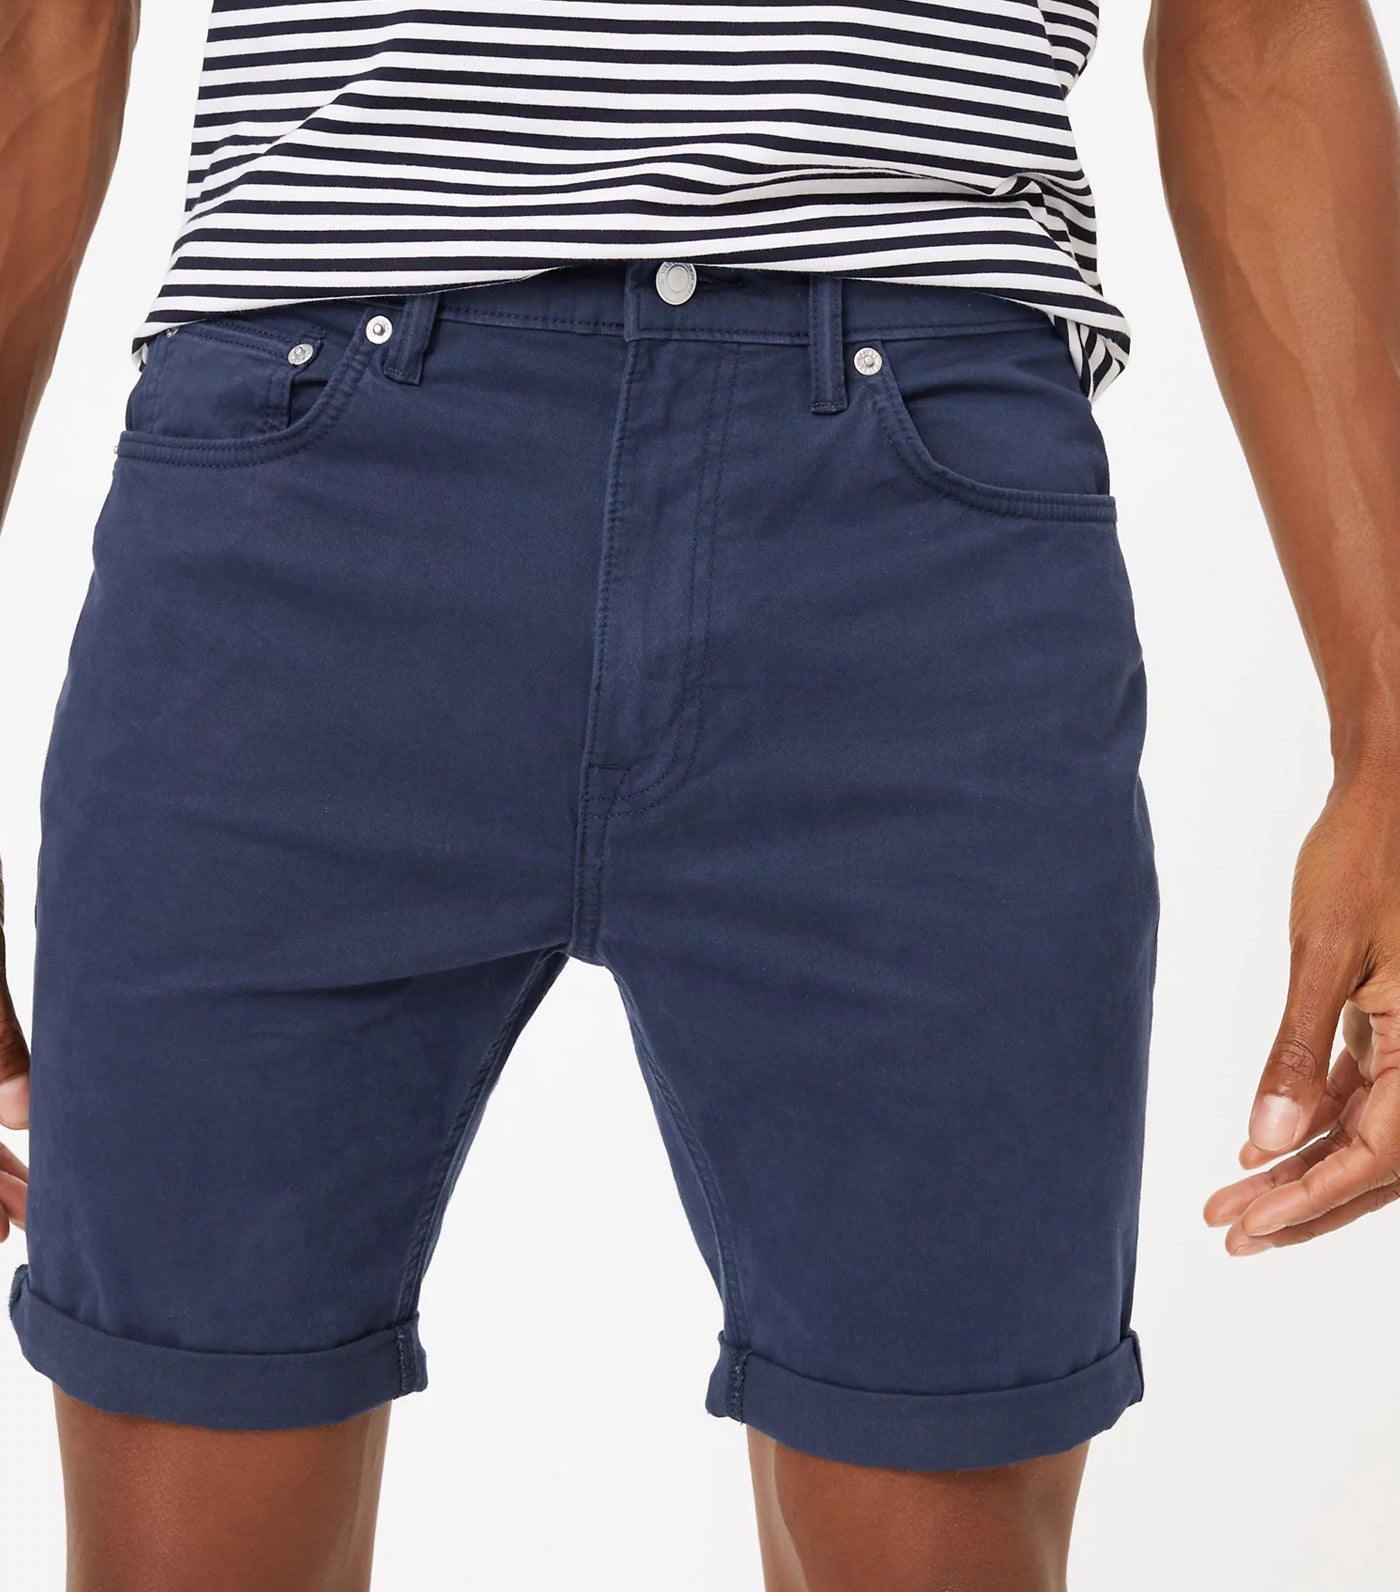 Cotton Stretch 5-Pocket Shorts Navy